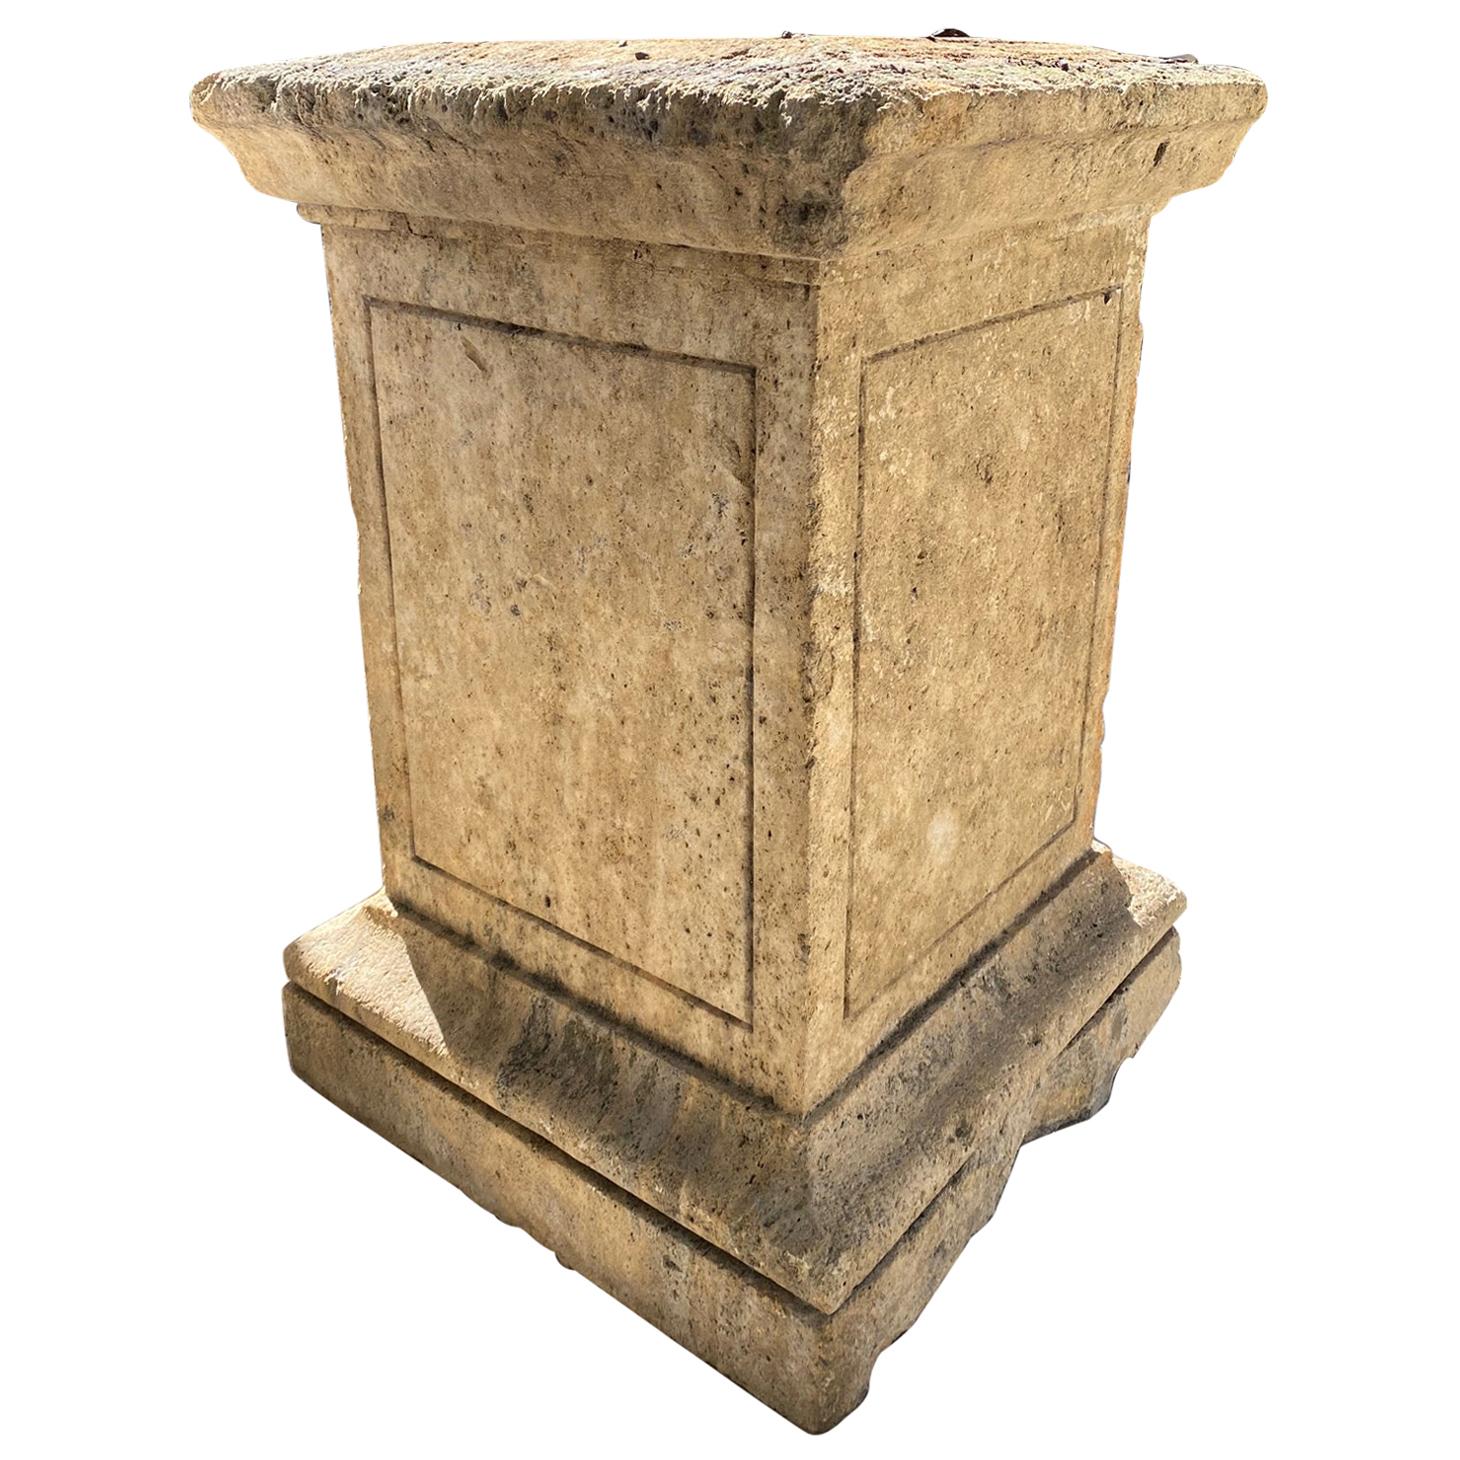 Colonna con piedistallo in pietra intagliata a mano, fontana con base a blocco centrale in vendita